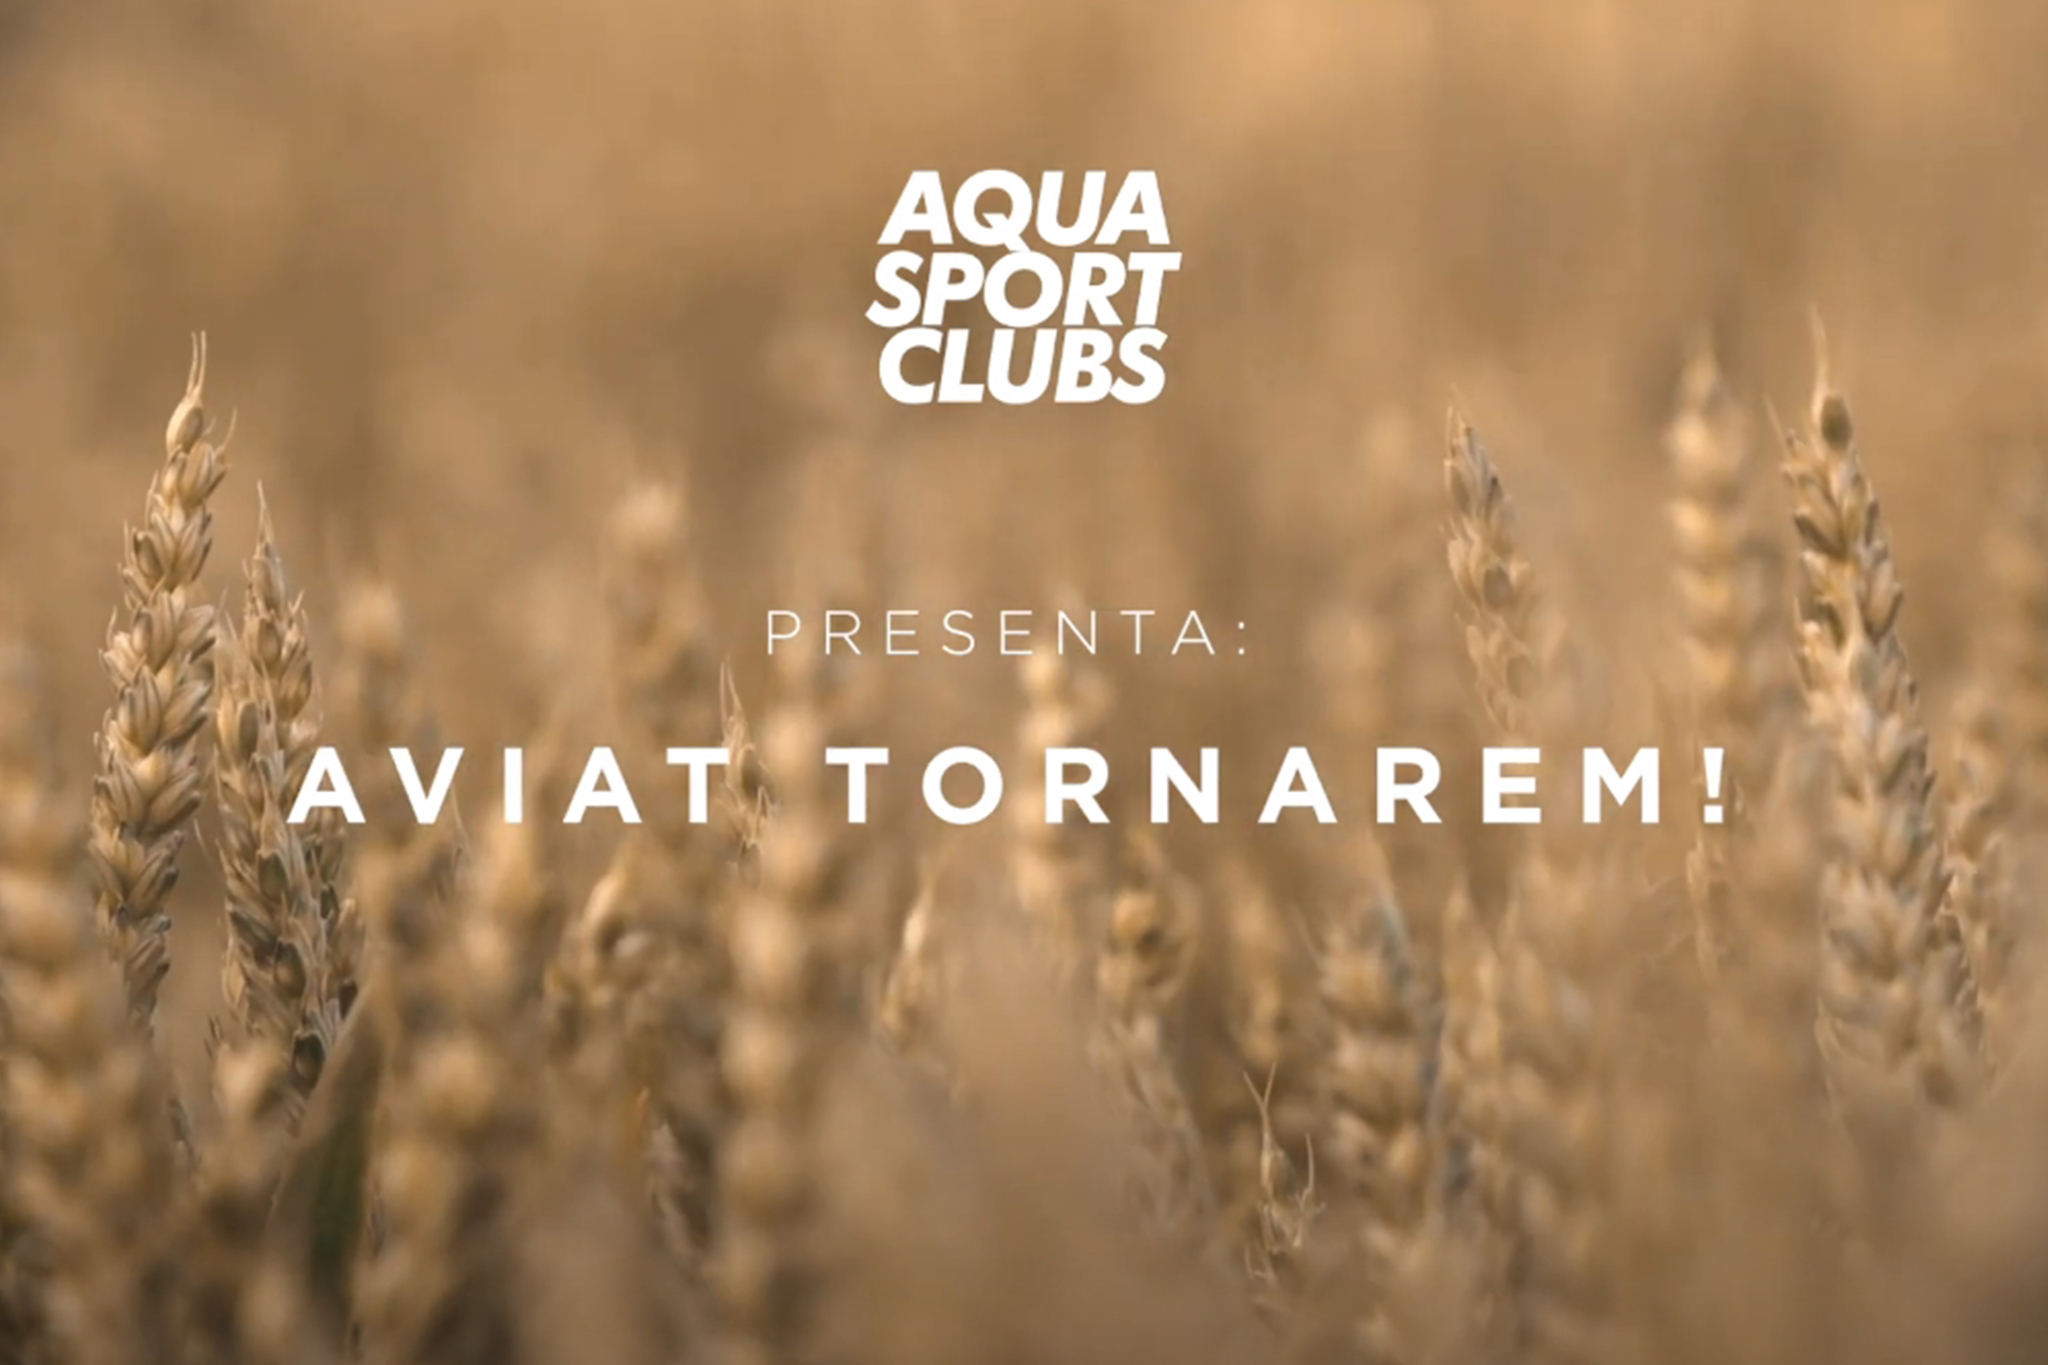 Video Emocional - Aqua Sport Clubs